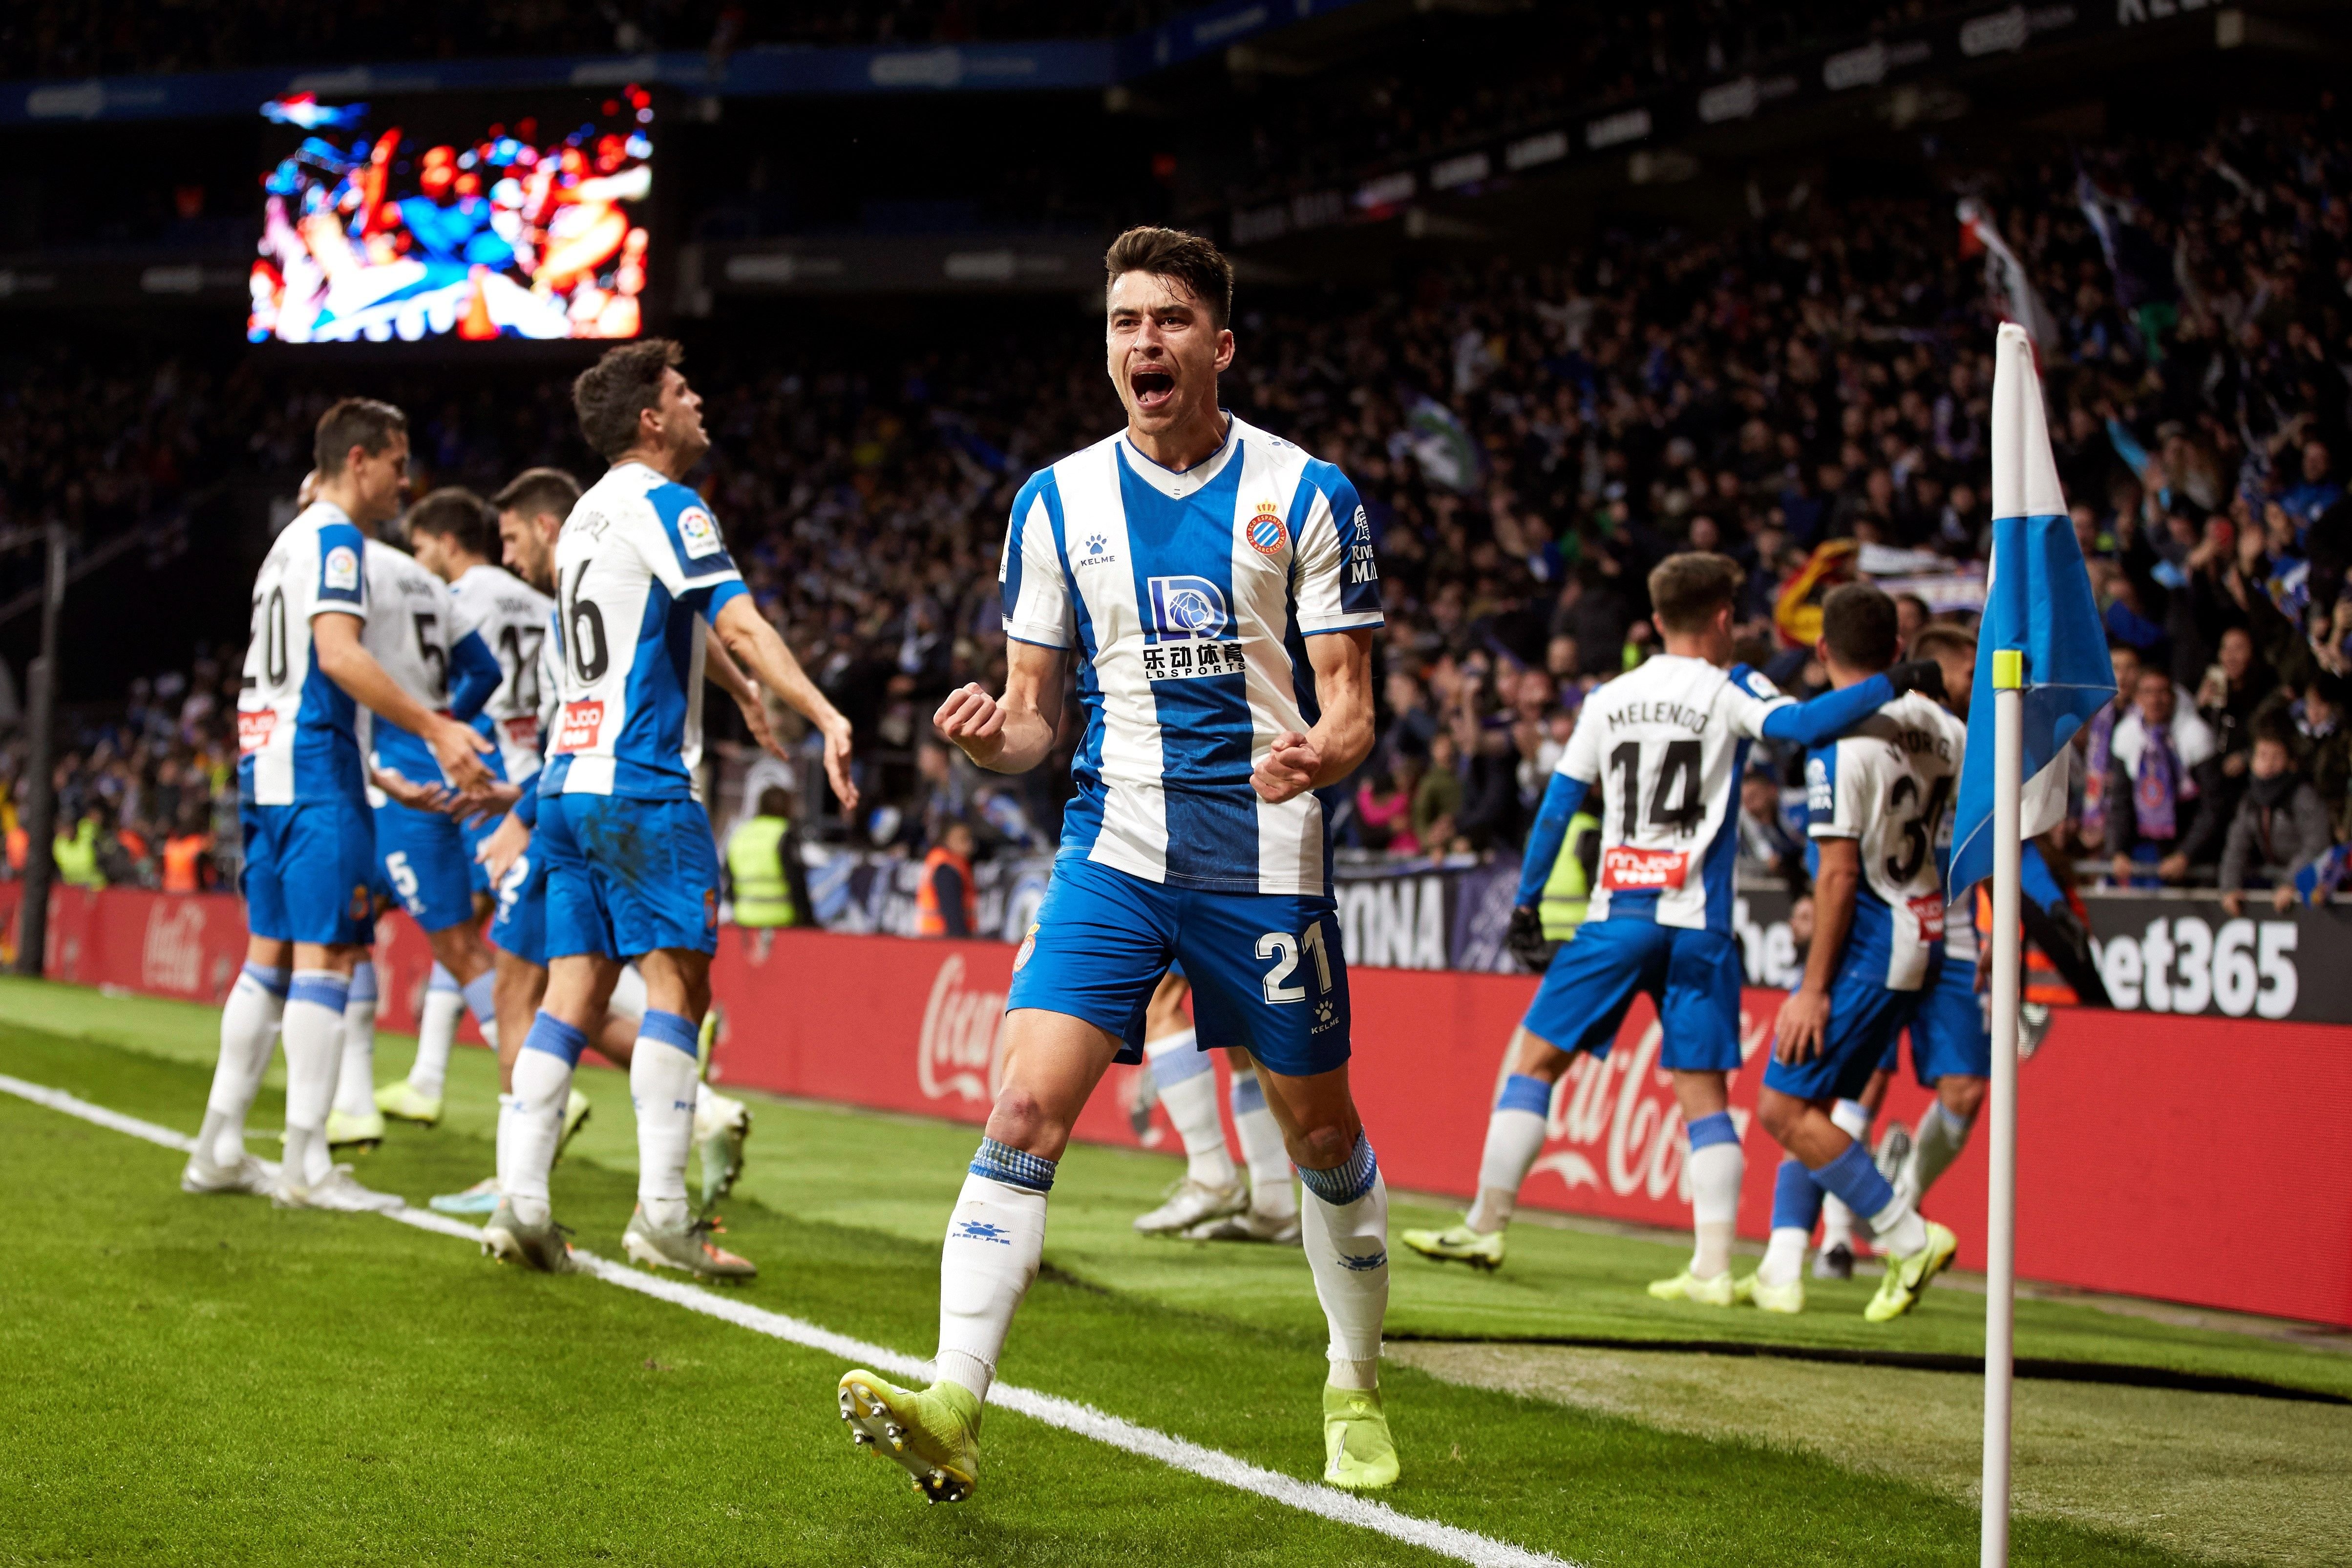 Calendario del final de Liga del Espanyol: ¿cuándo y contra quién juega?